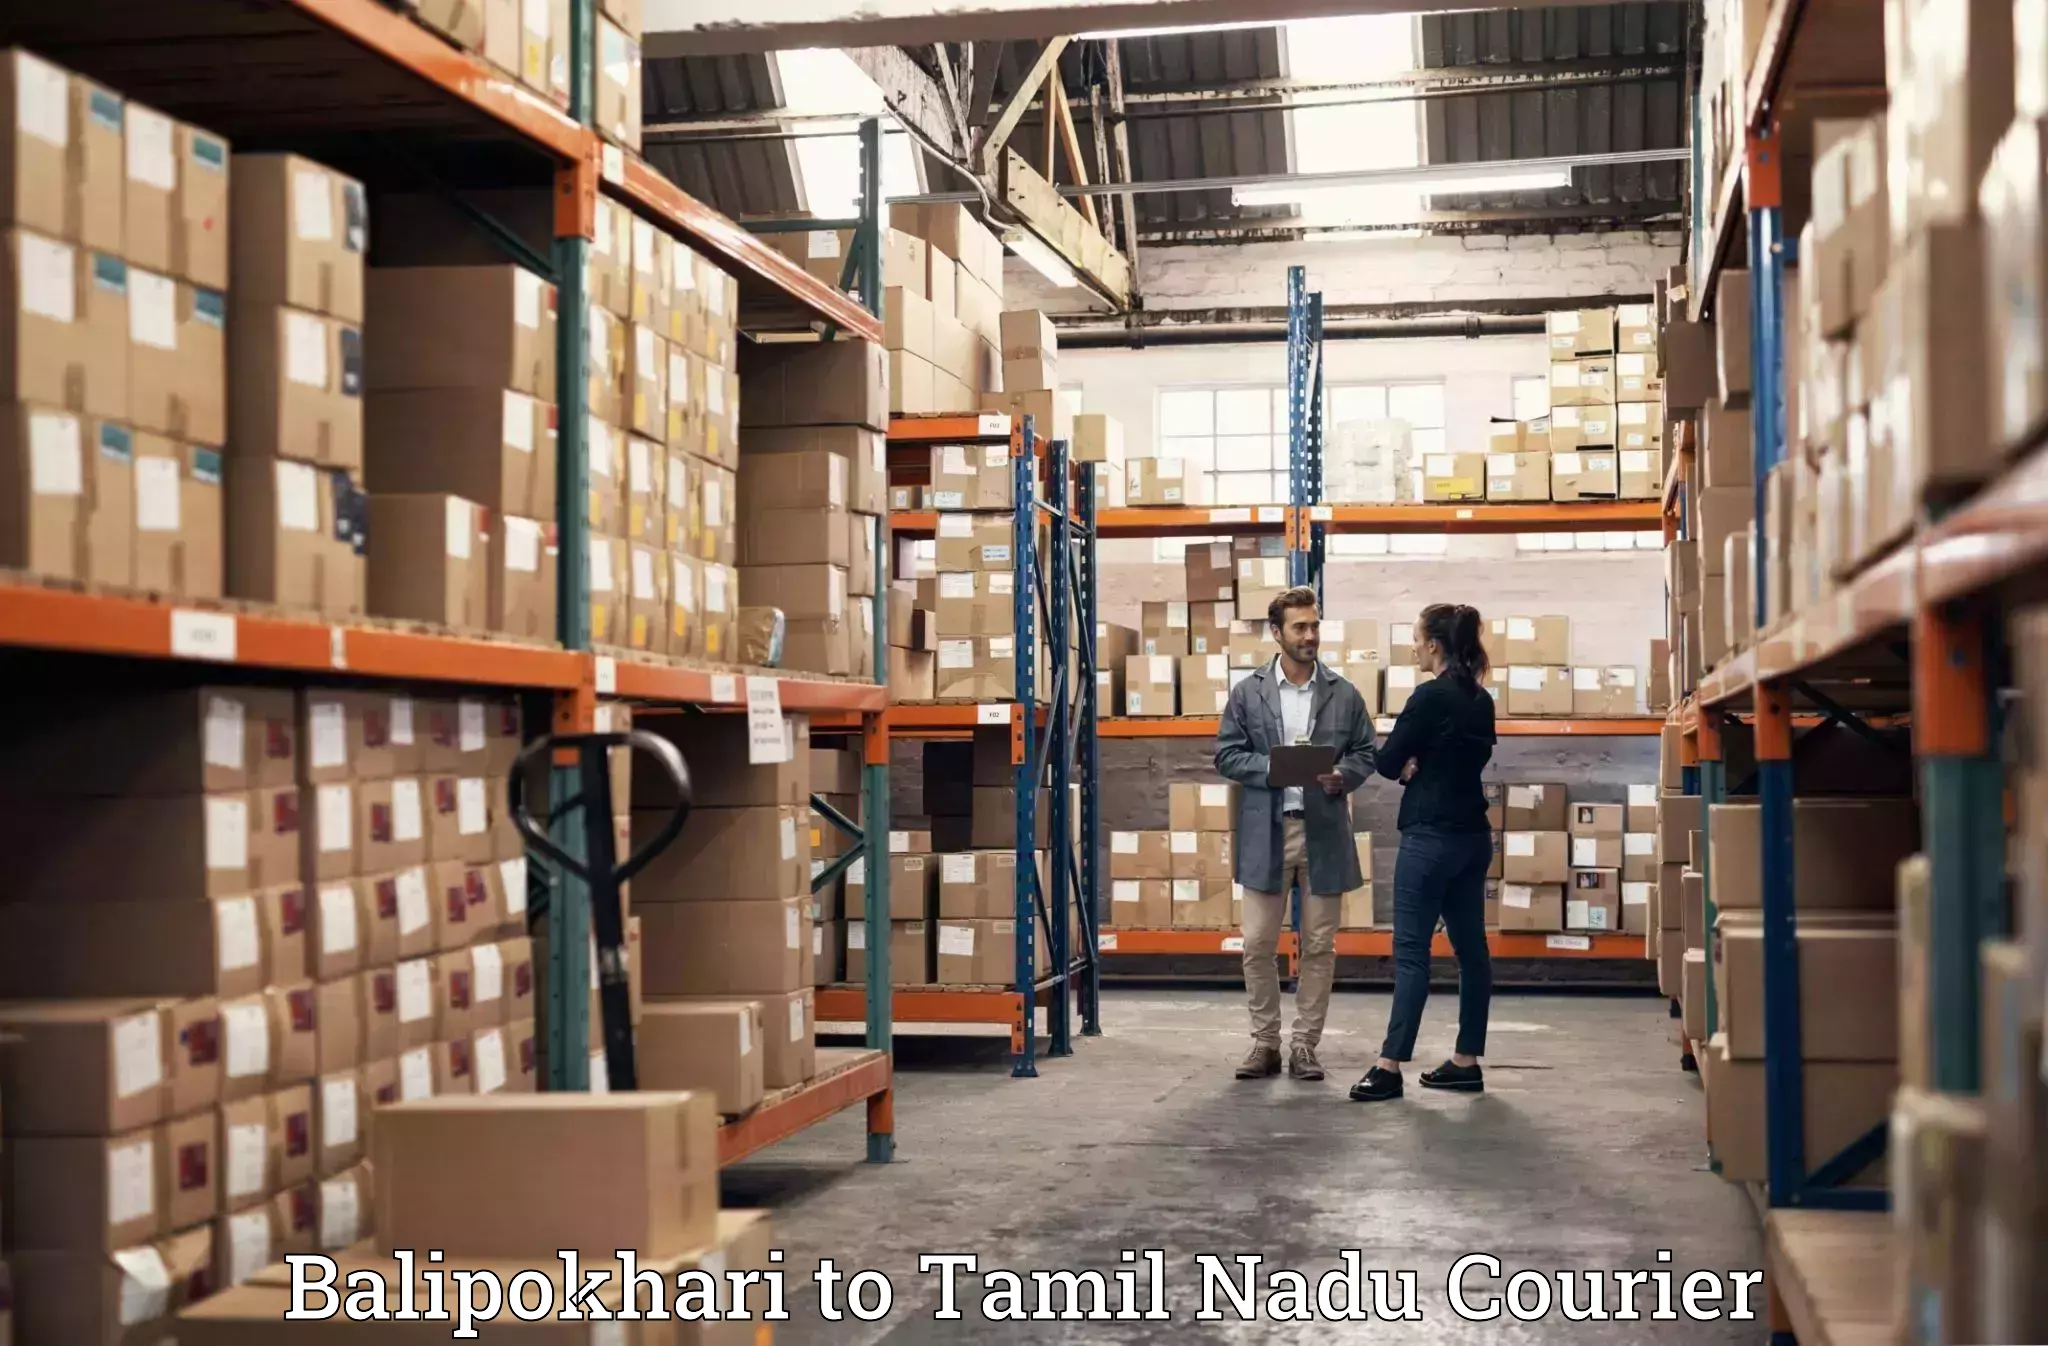 Furniture relocation experts Balipokhari to Thiruvadanai